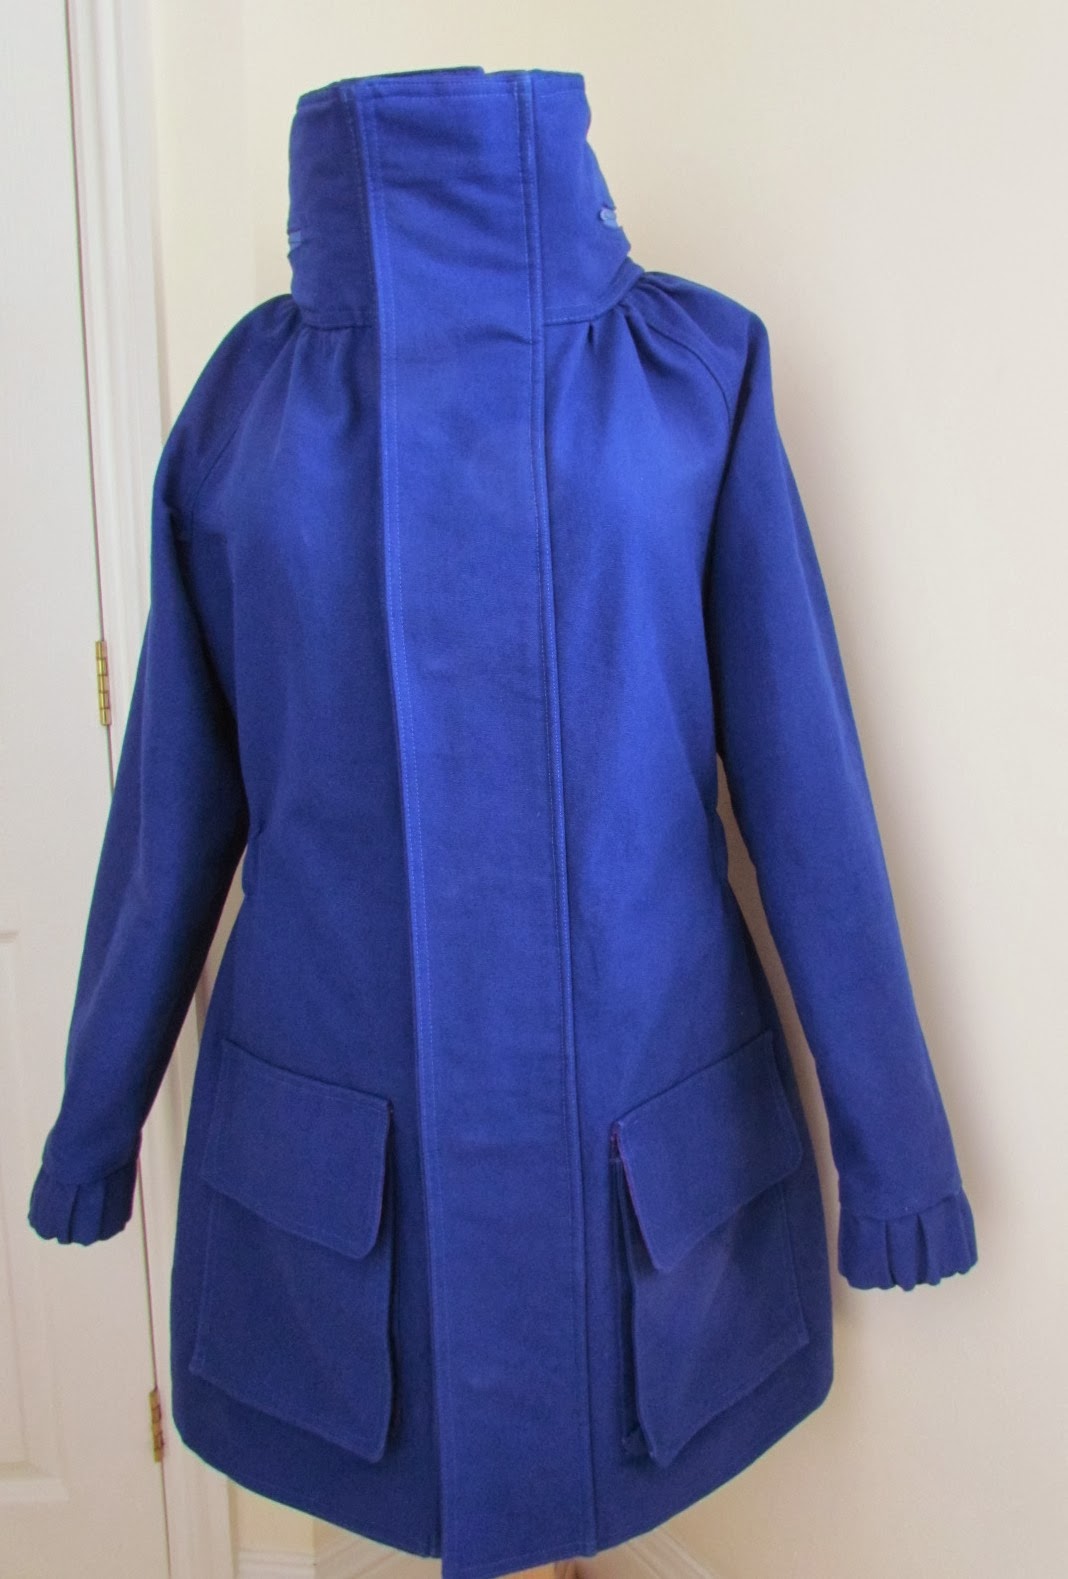 Denim Skirts and Other Stuff: Royal Blue Minoru Jacket